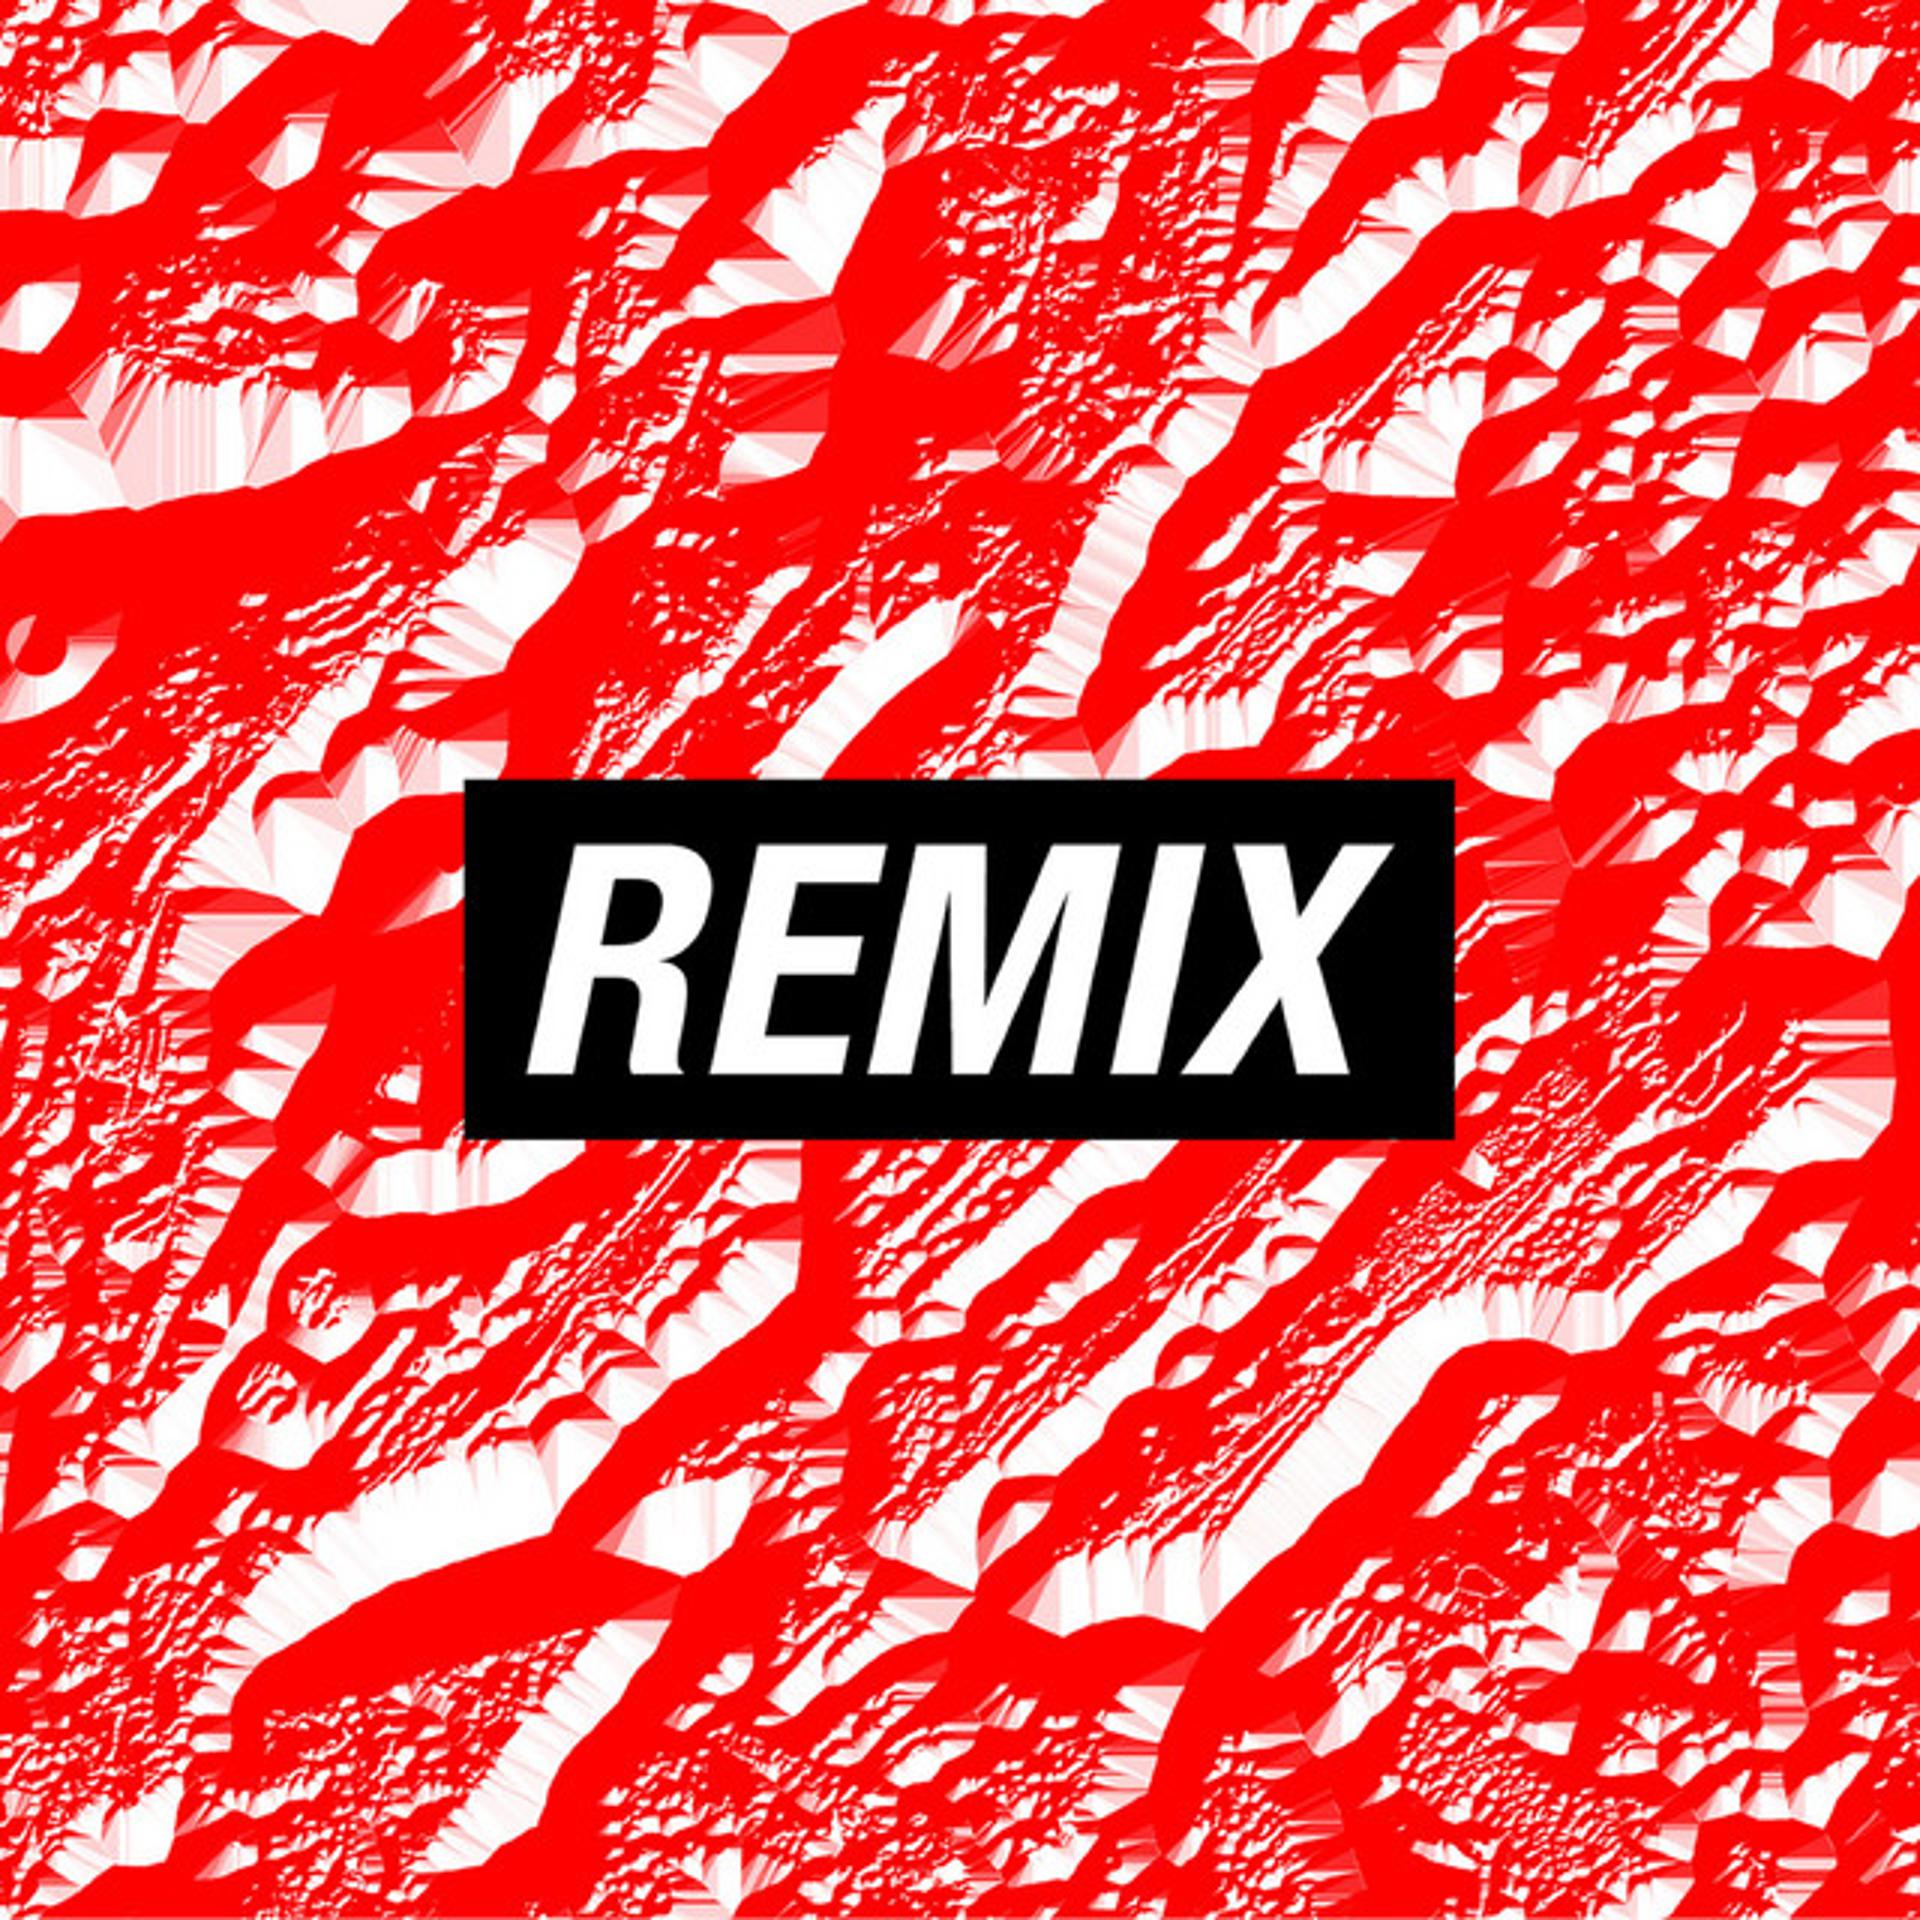 Ремикс песни э. Обложка для ремикса. Remix надпись. Обложка для плейлиста с ремиксами. Обложка для плейлиста Remix.